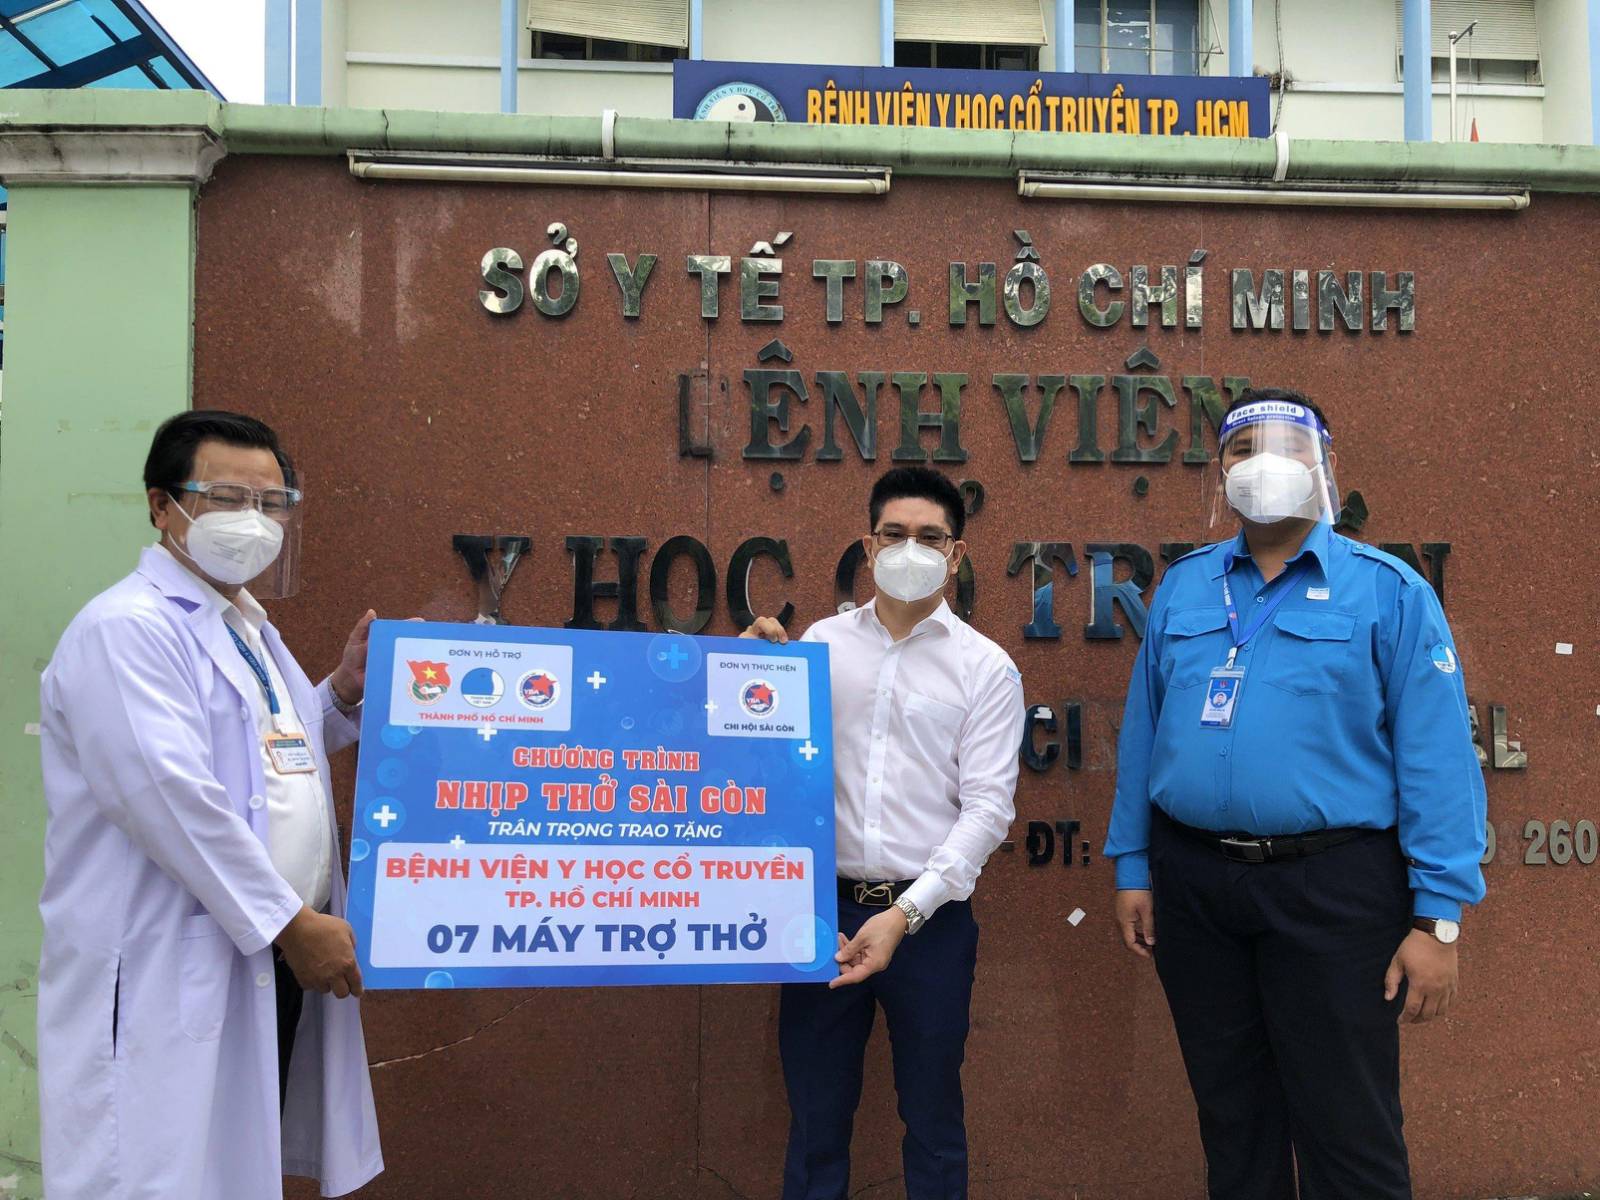 VietABank đồng hành cùng Nhịp Thở Sài Gòn trao tặng 65 máy trợ thở